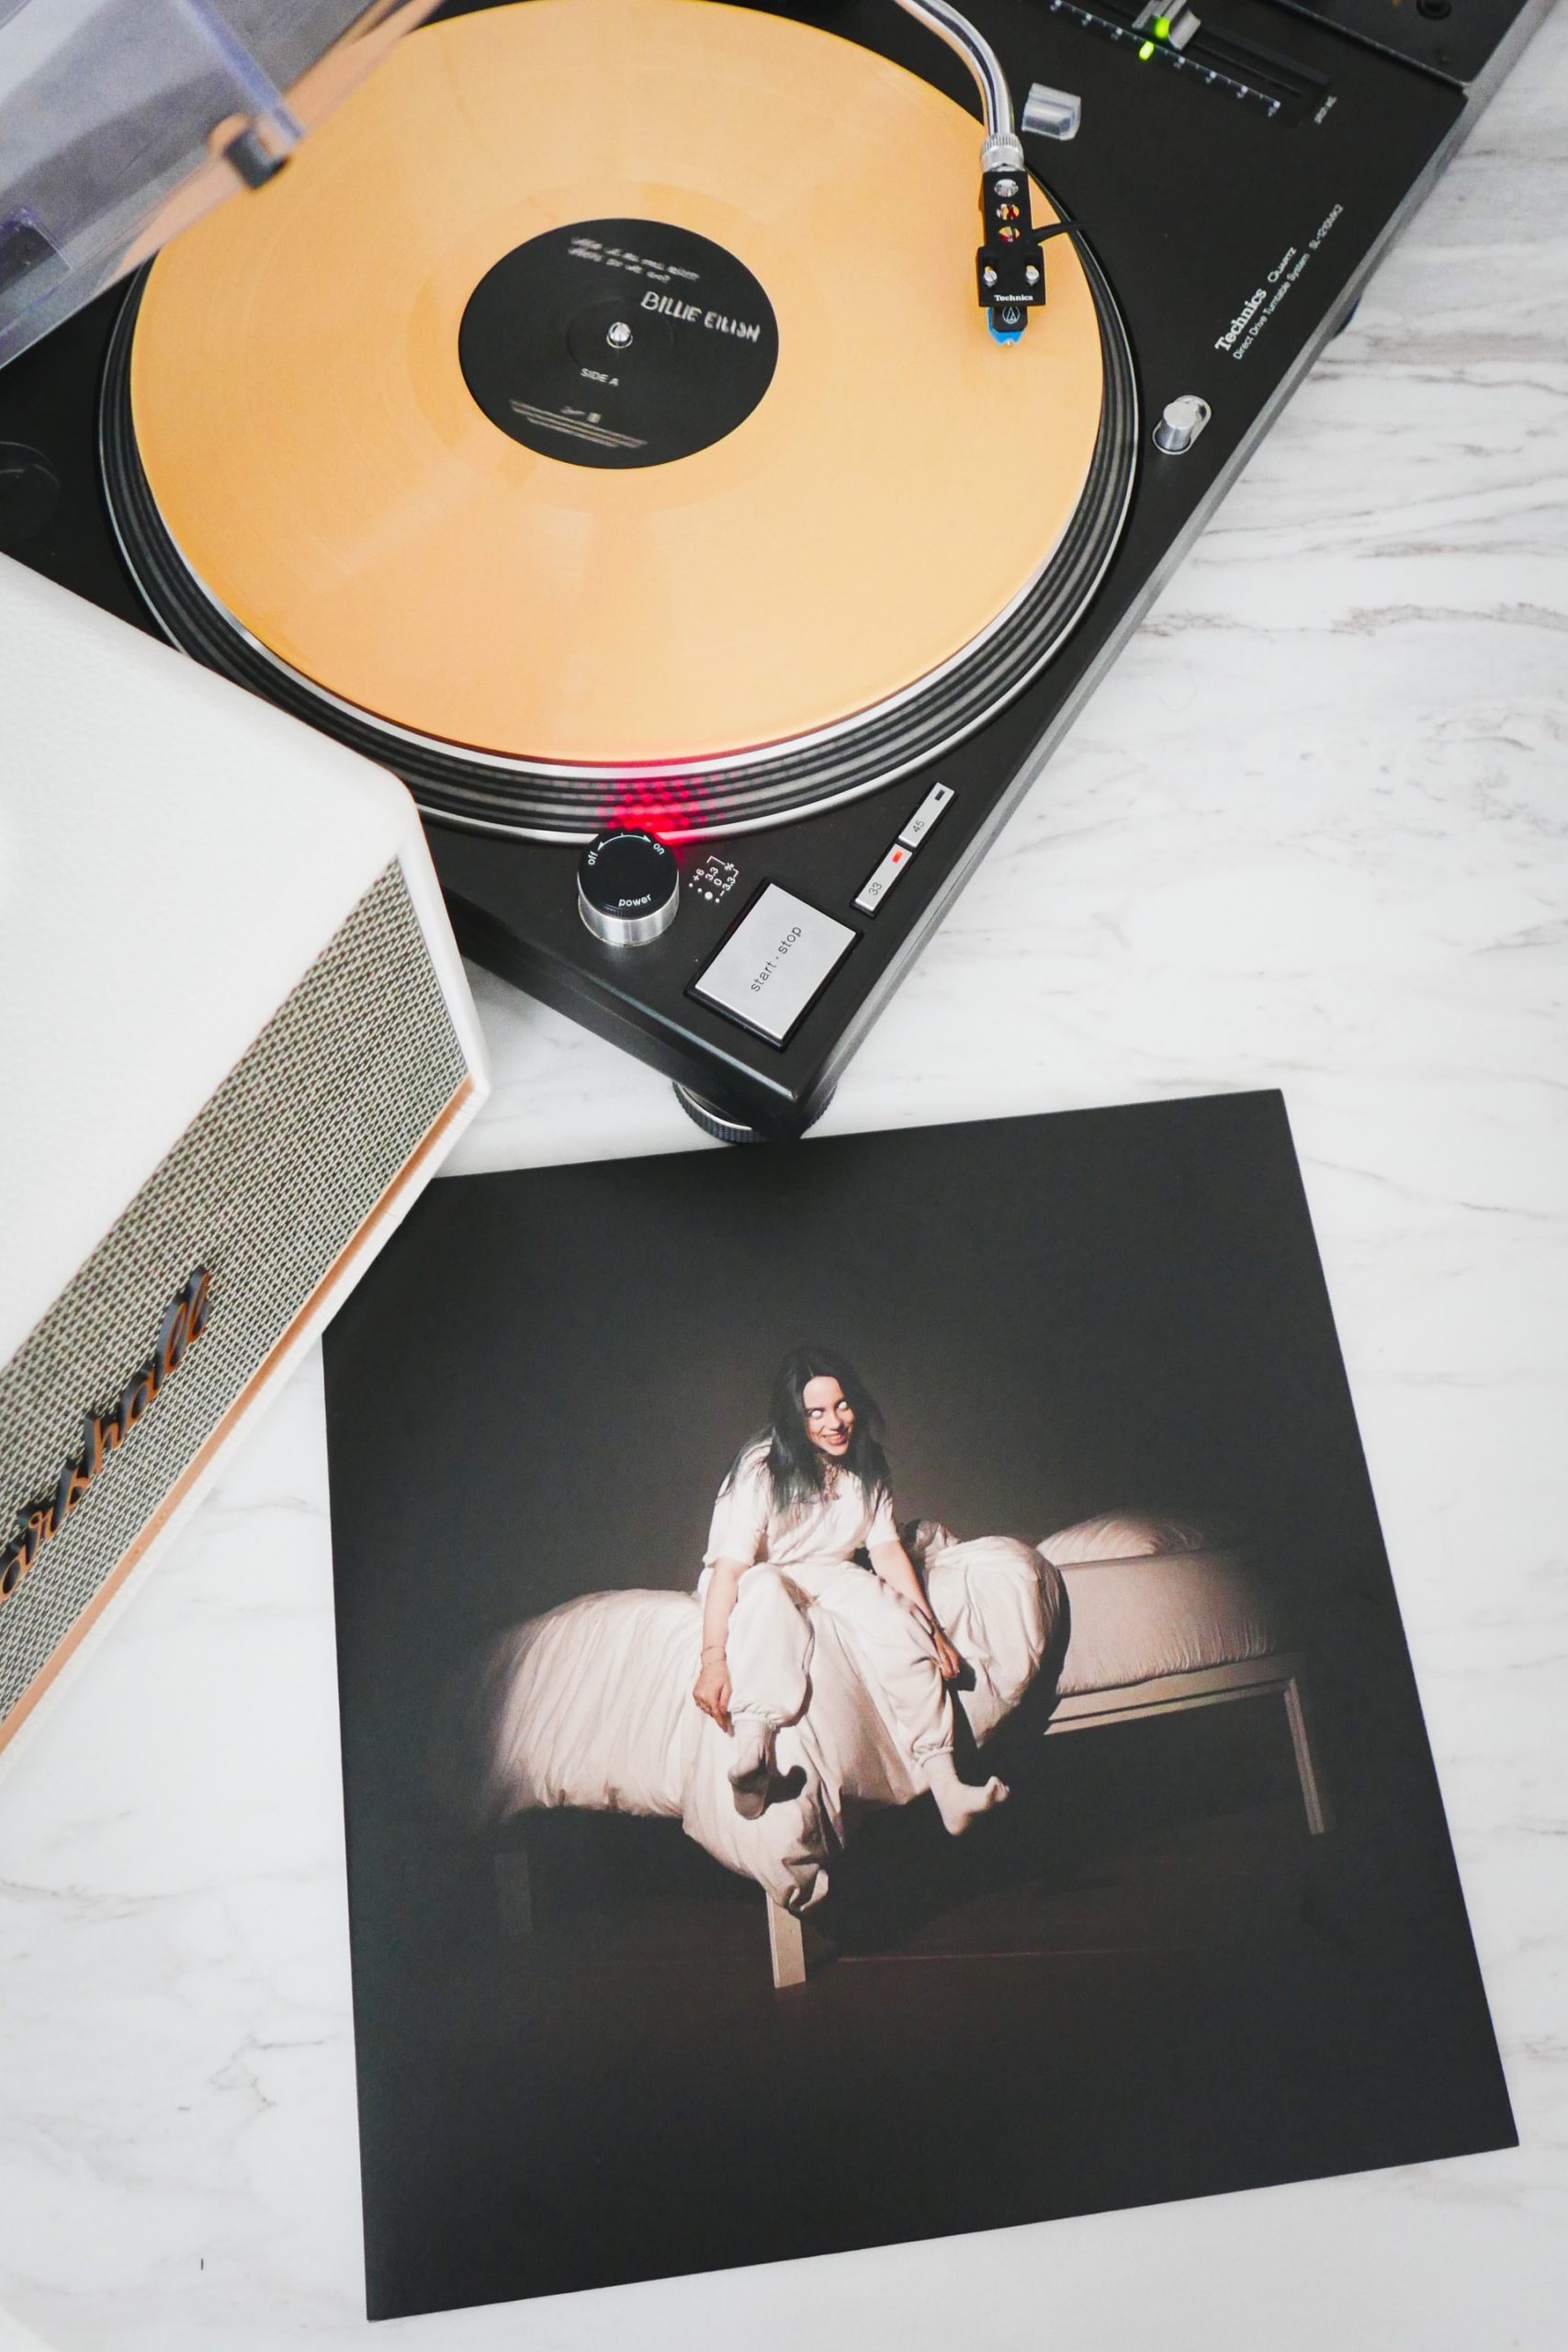 LP amarelo do primeiro disco da cantora Billie Eilish